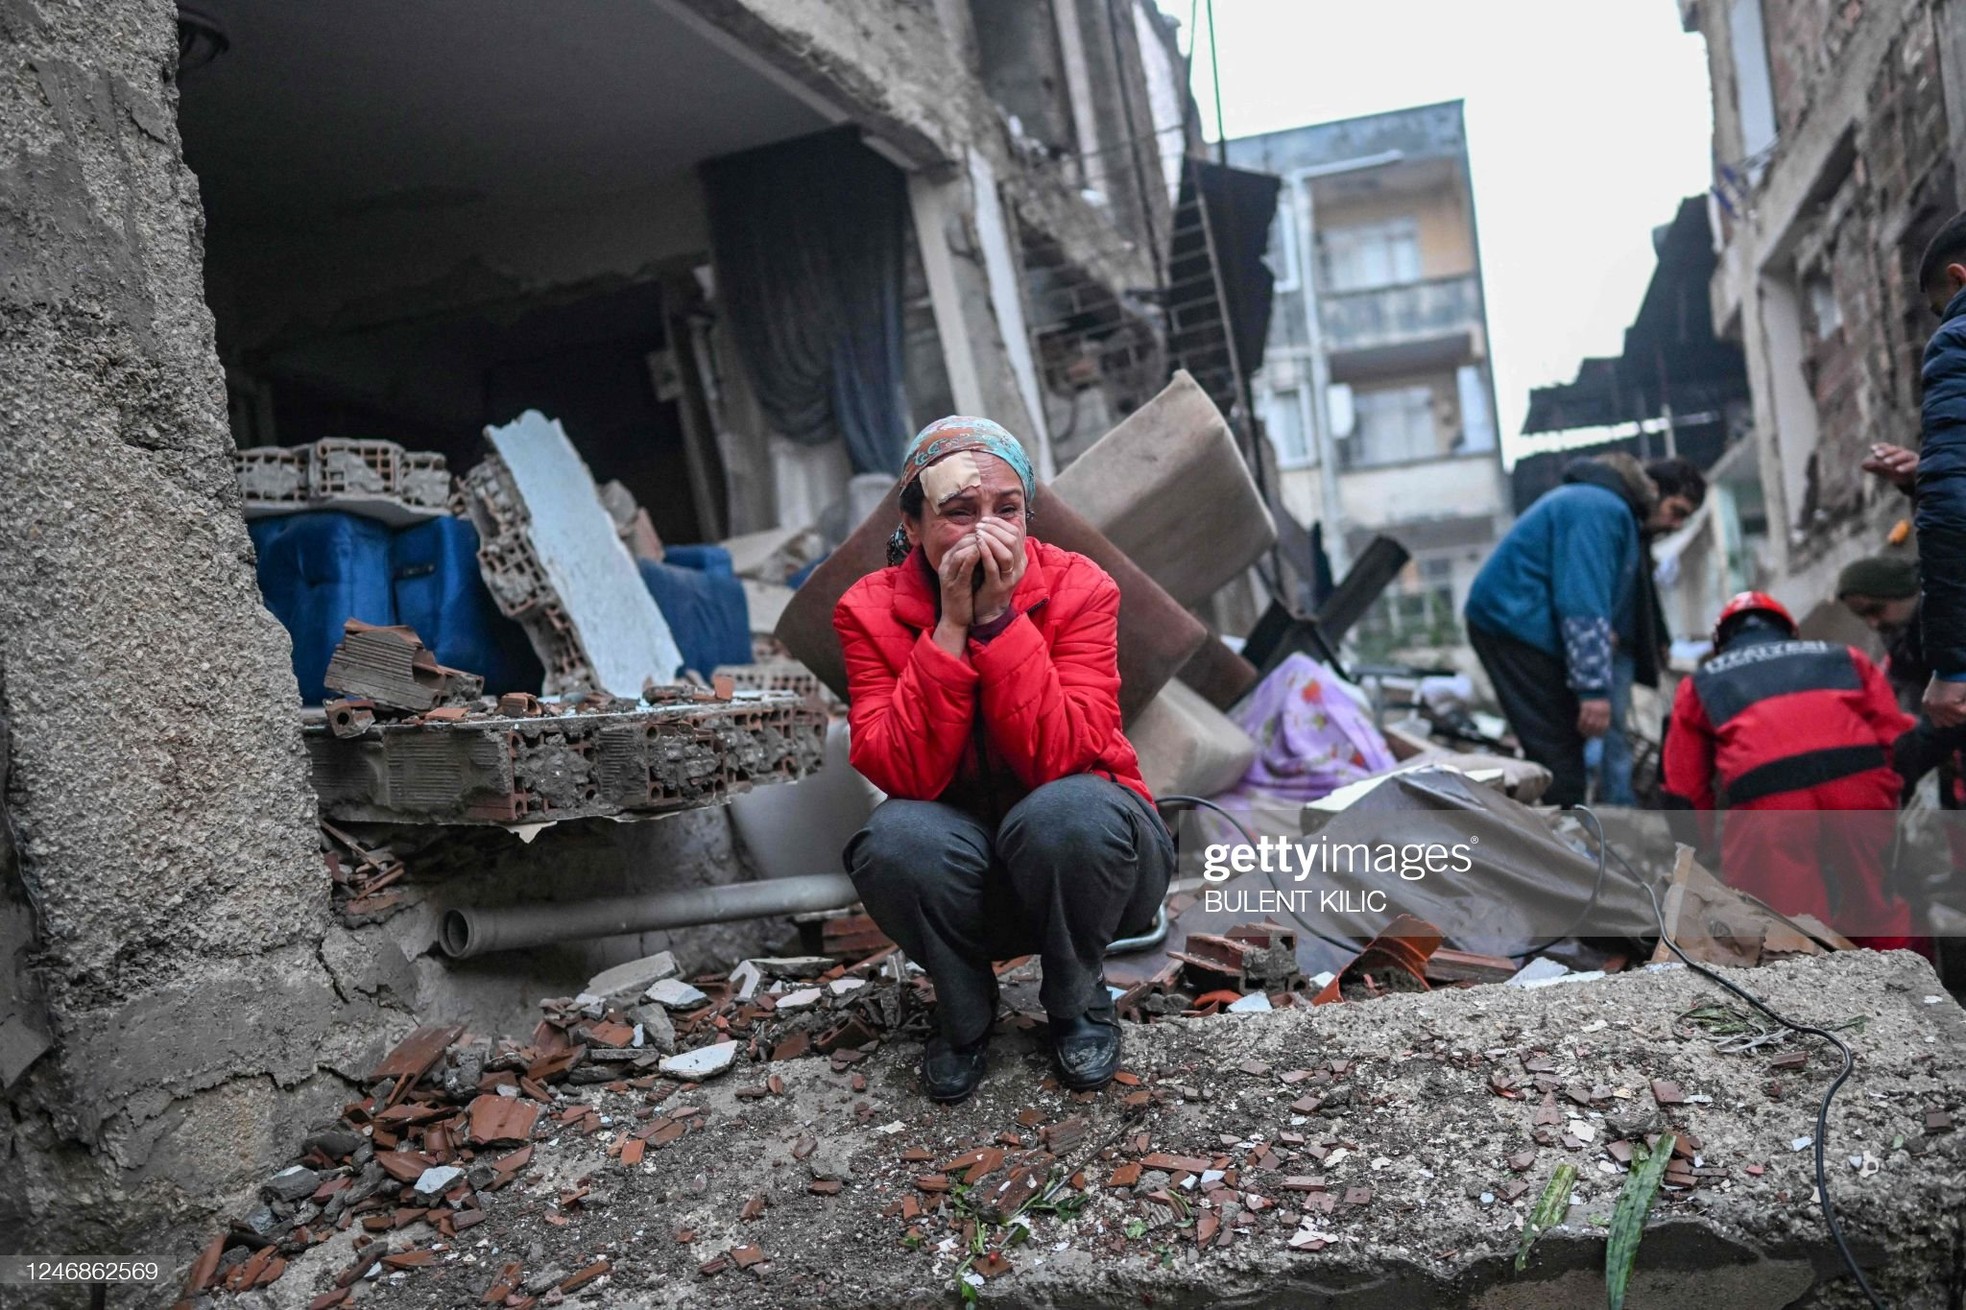 Rơi nước mắt cảnh người dân Thổ Nhĩ Kỳ thẫn thờ bên những tòa nhà vỡ vụn-8